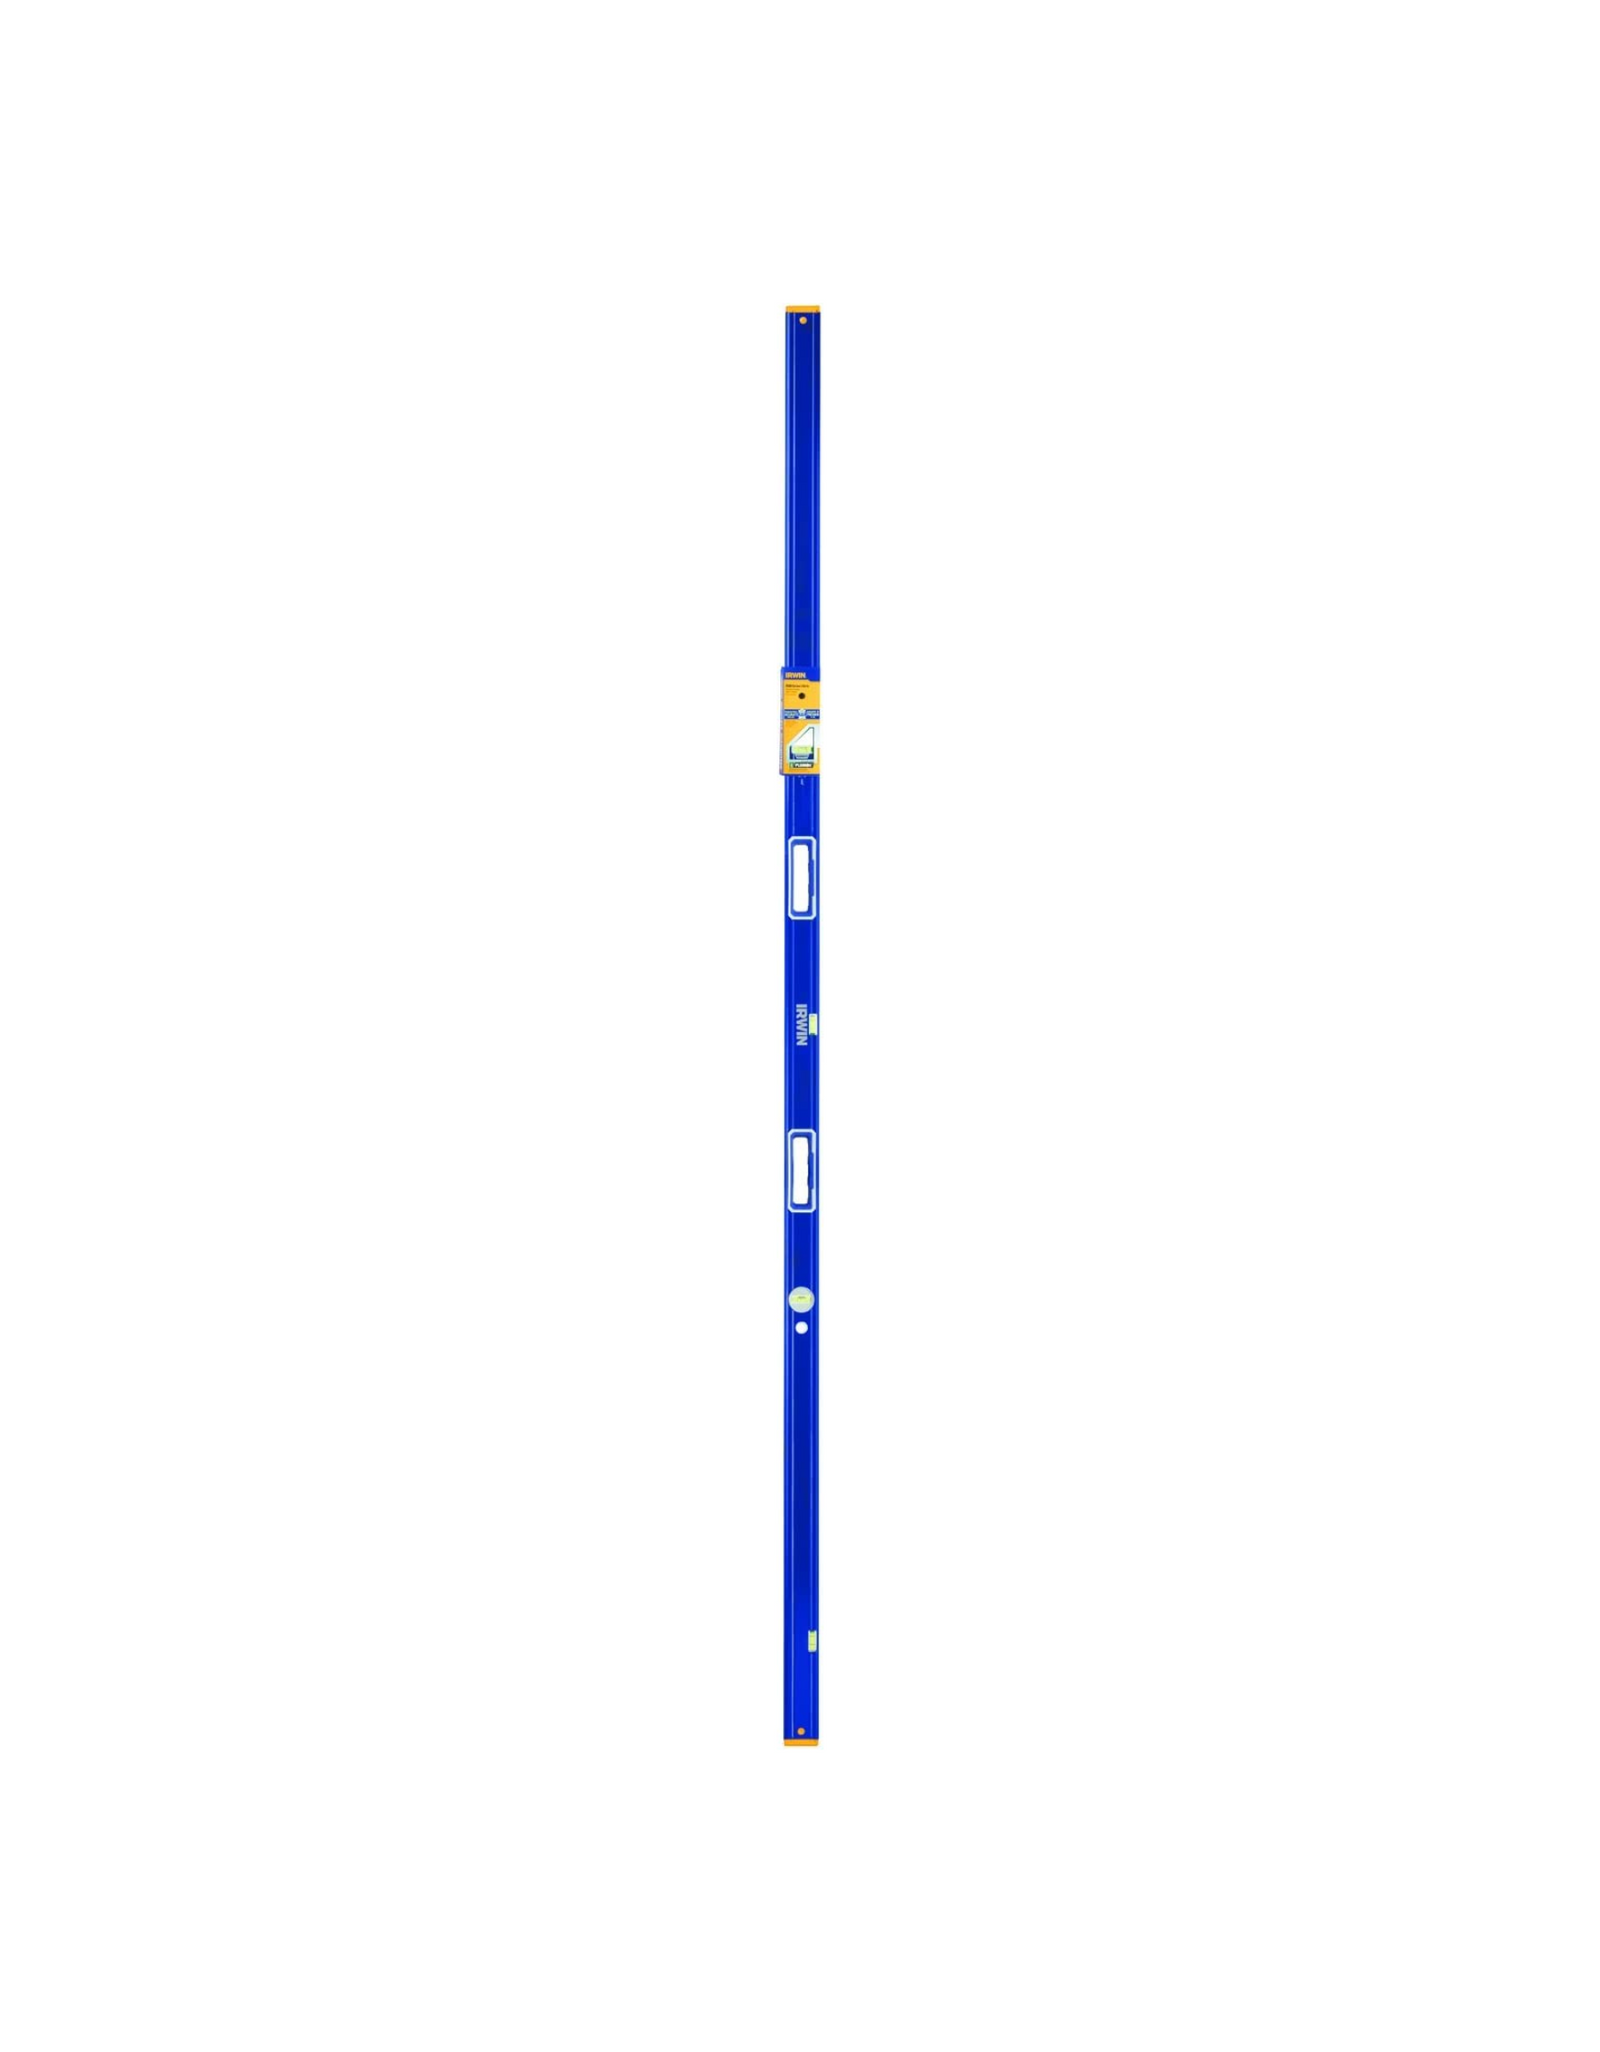 IRWIN 1794071 96 Inch 2500 Box Beam Level Tool, Blue